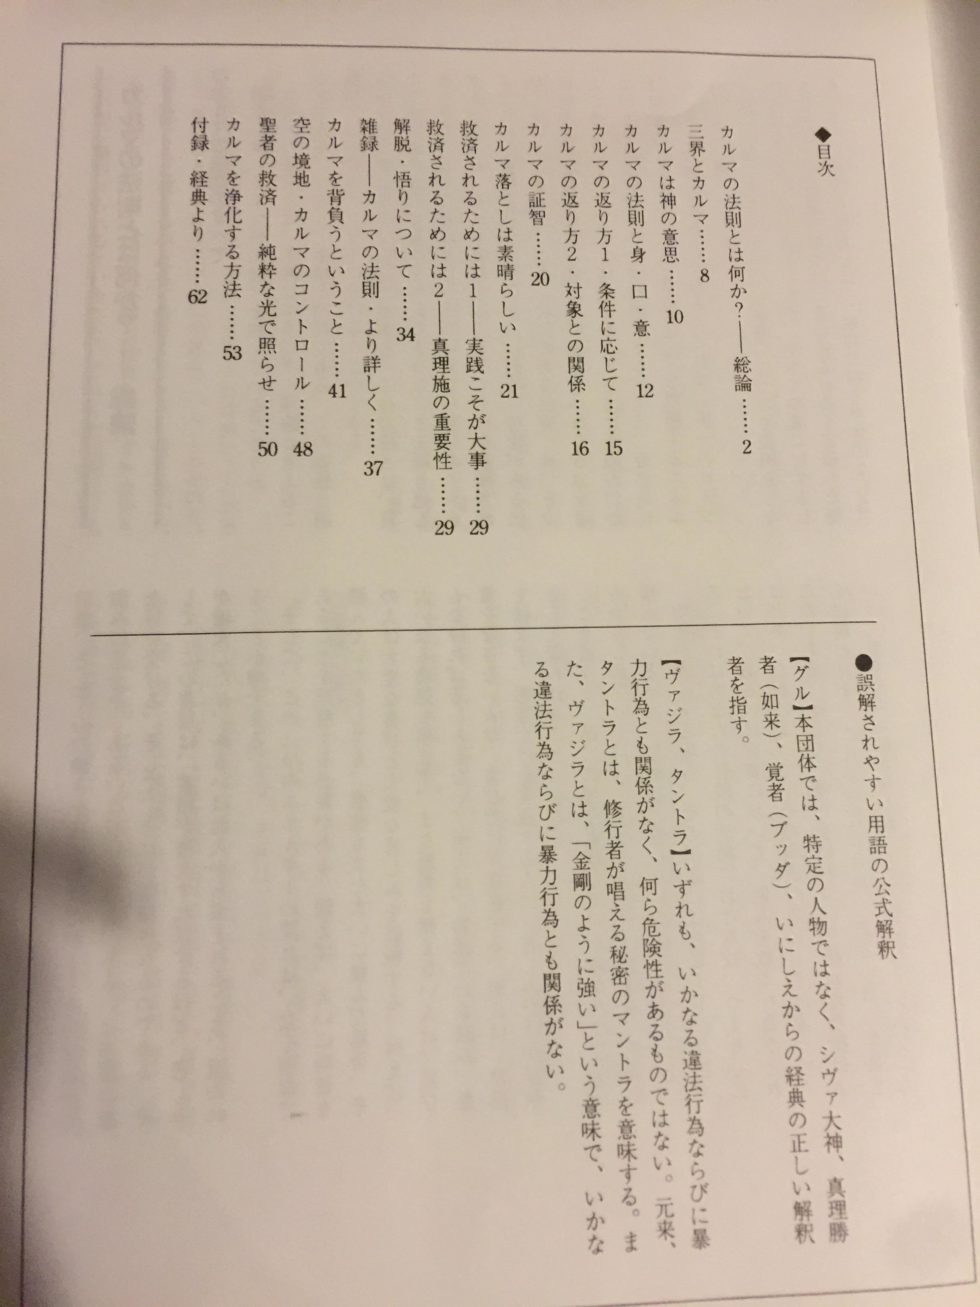 仏典研究 NO.5 1992年 9 オウム真理教 麻原彰晃-